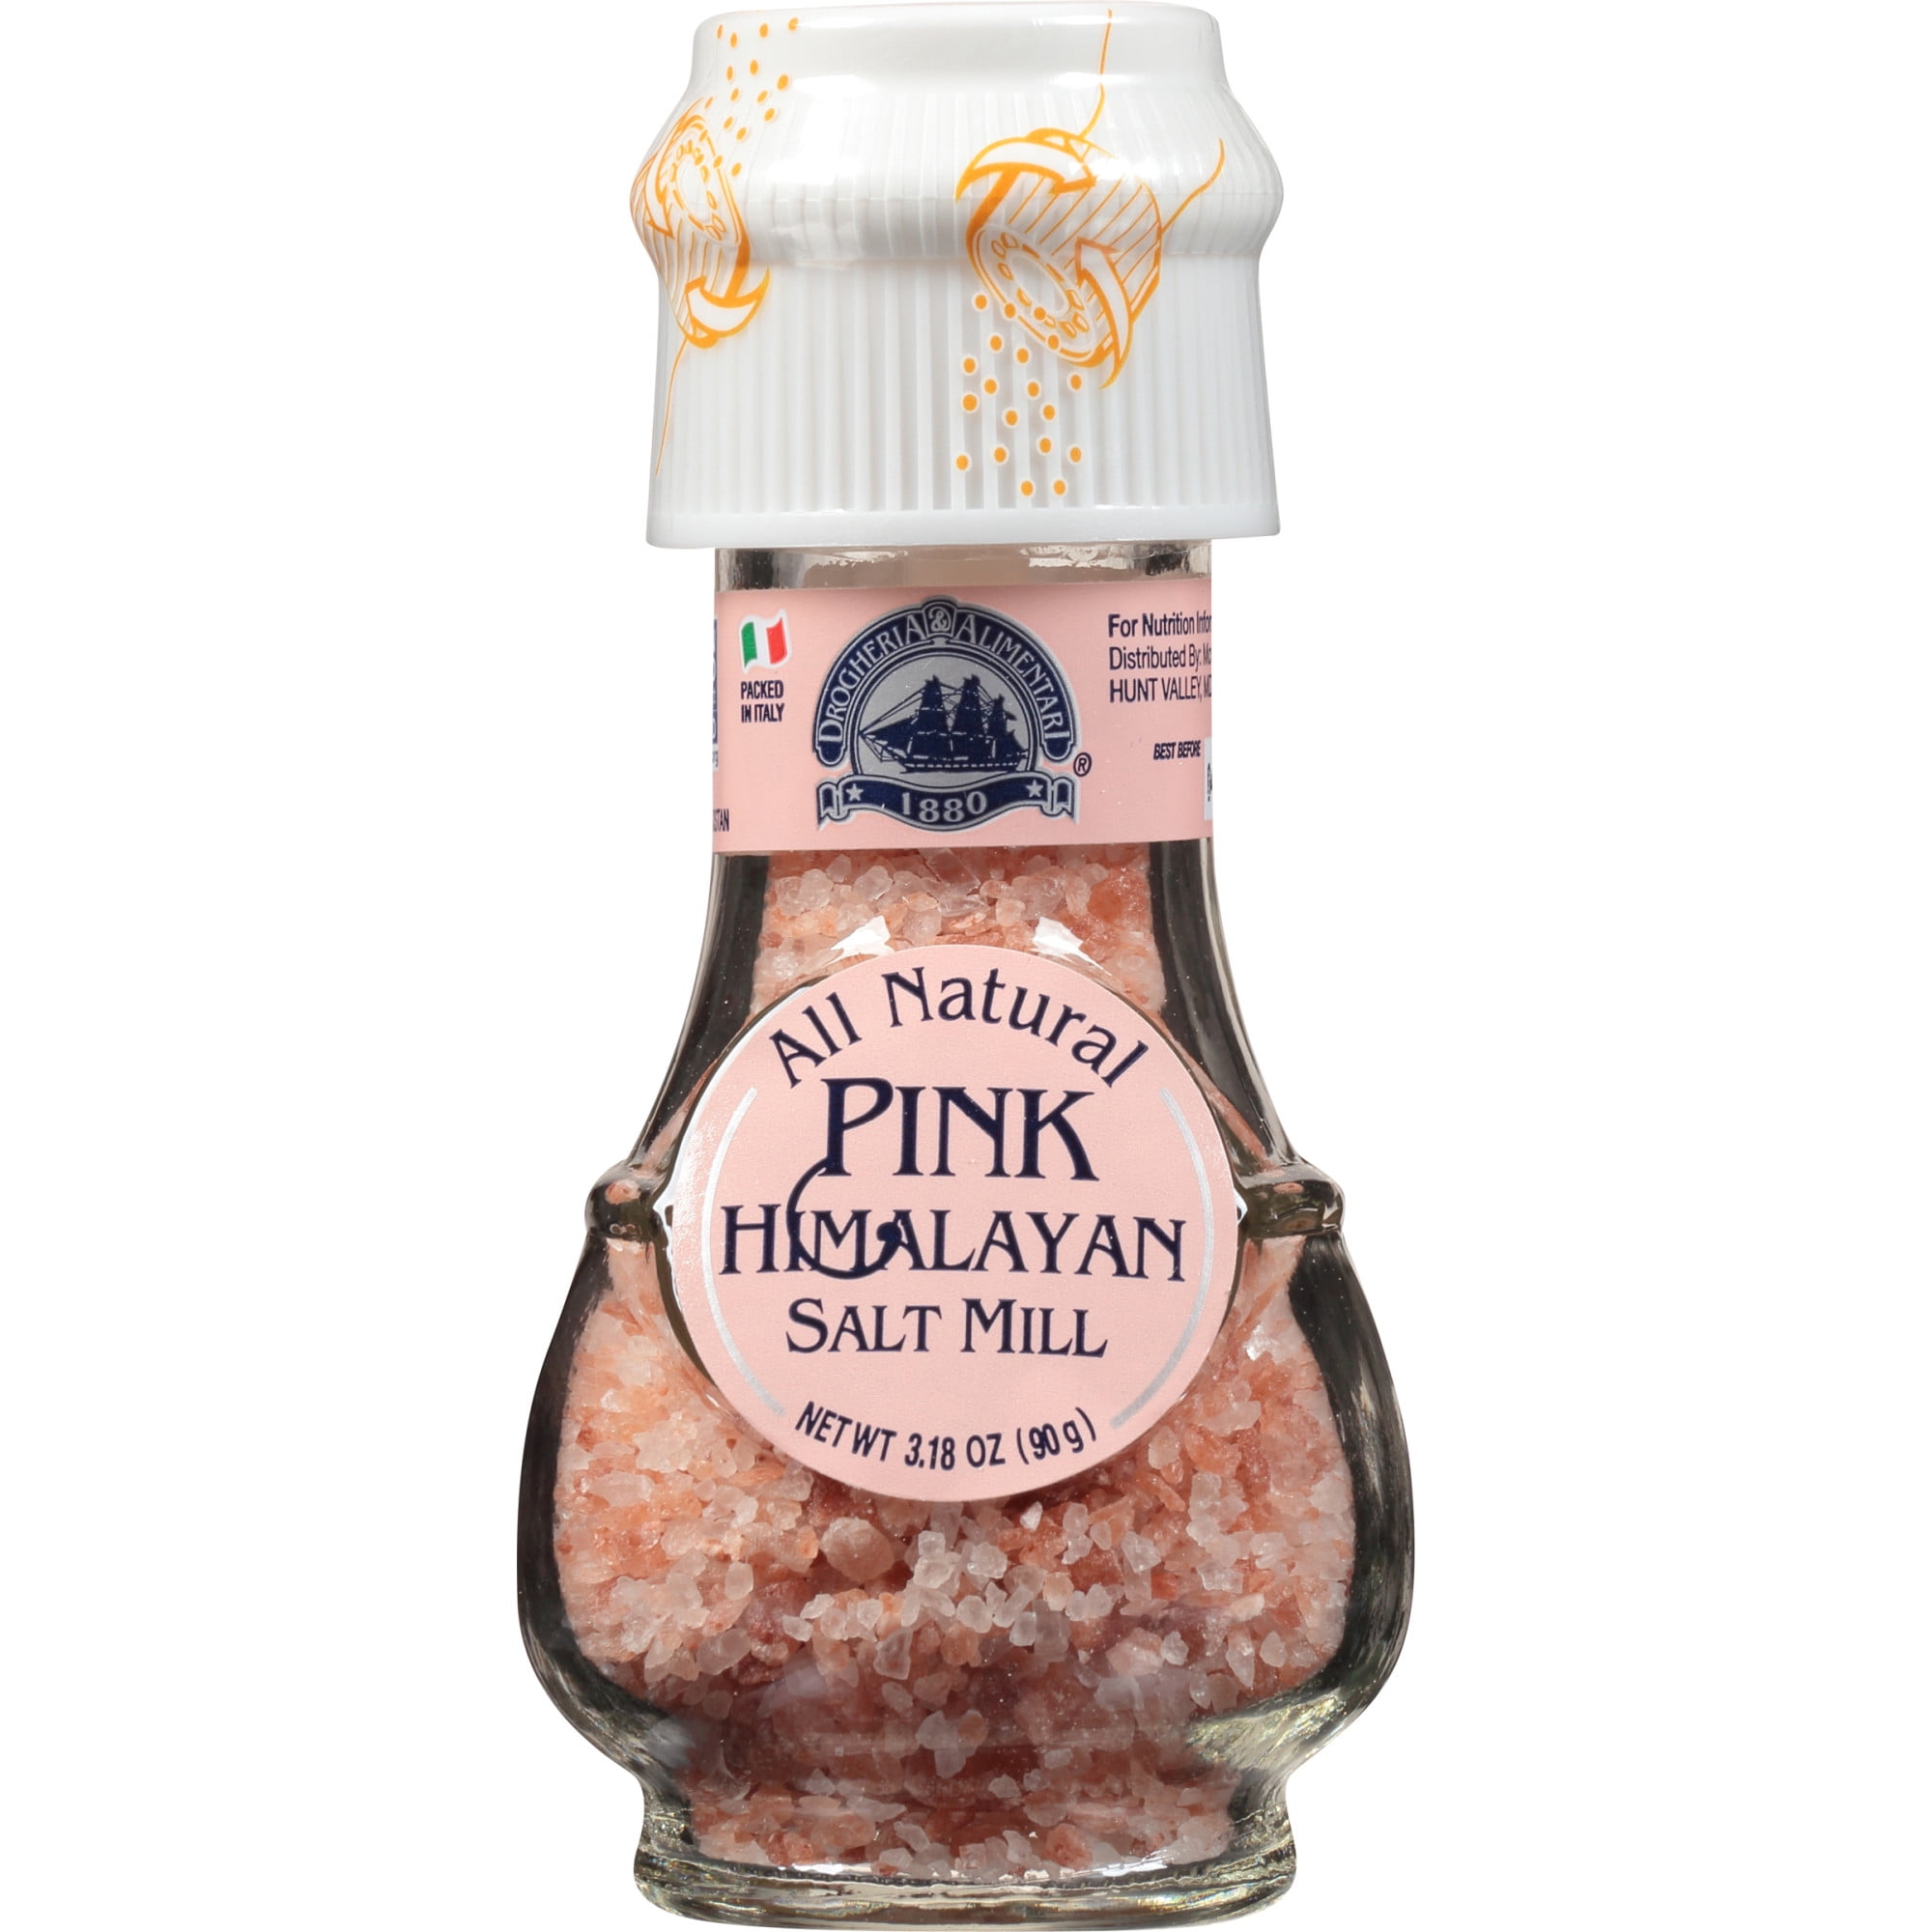 Carmencita Himalaya Pink Salt Grinder 13.05 Oz